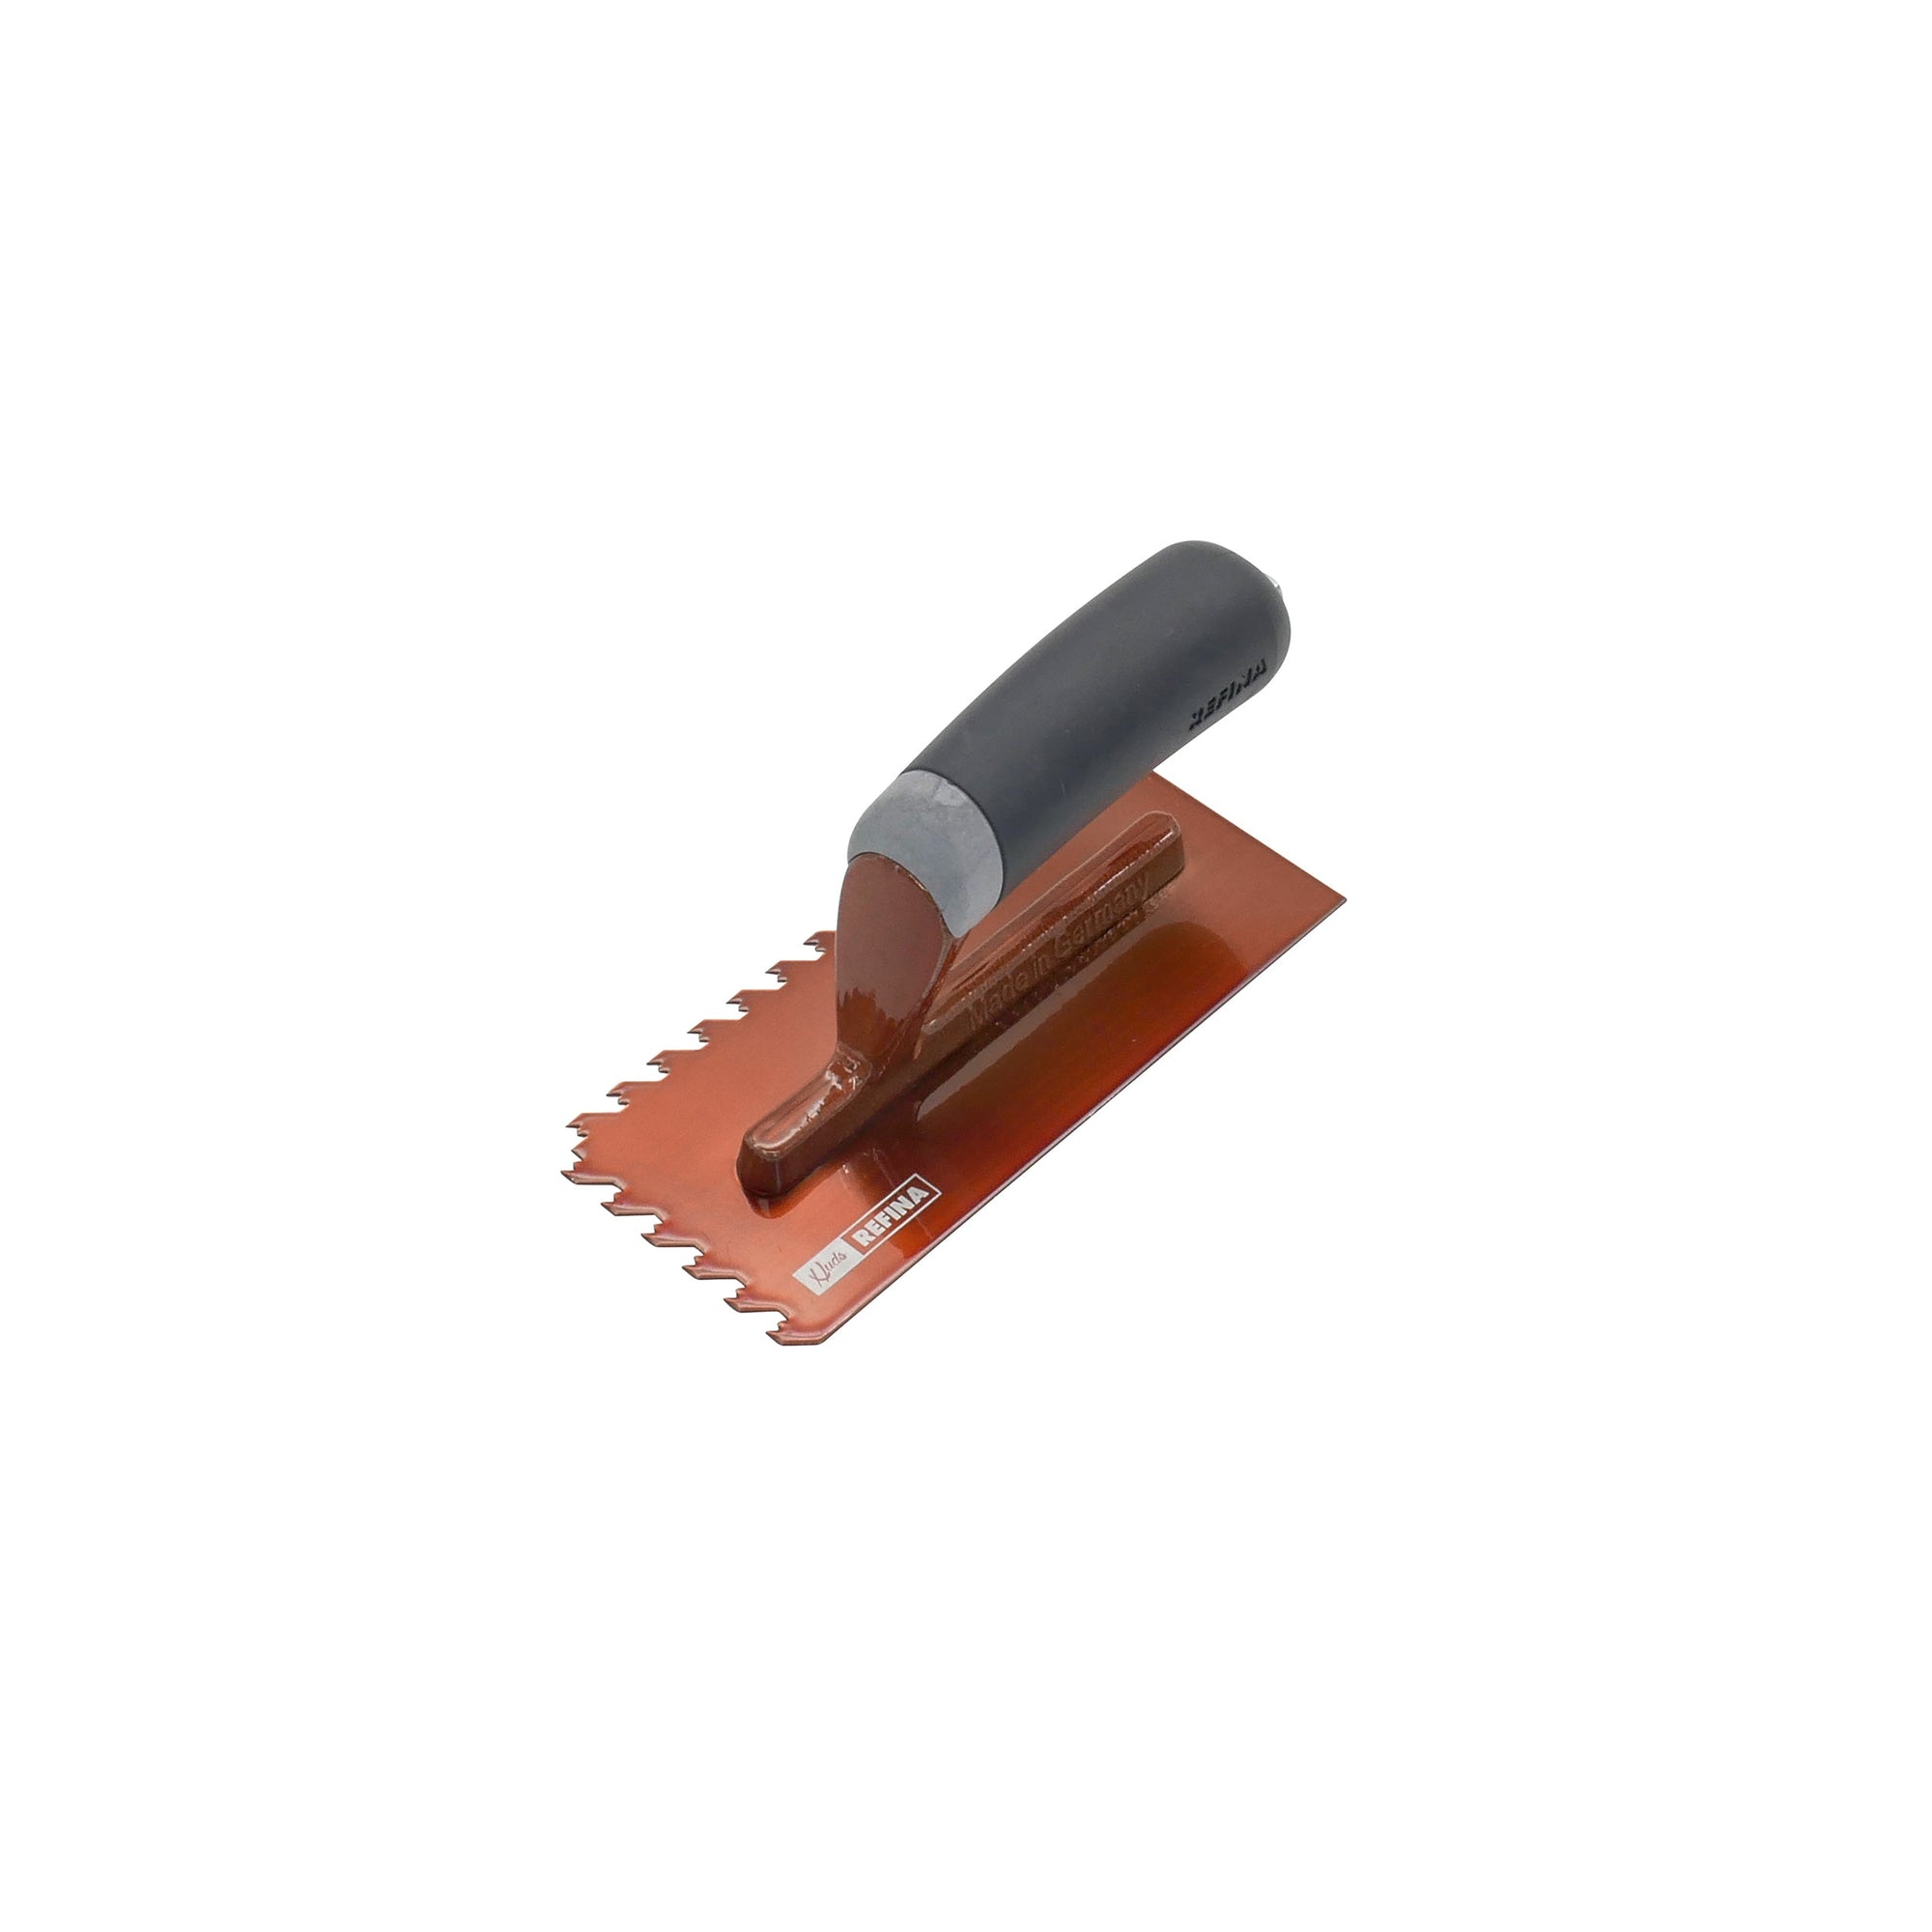 NotchTile Midget Trowel 8" 6mm Copper (190x85x90mm) - Calidad Tools